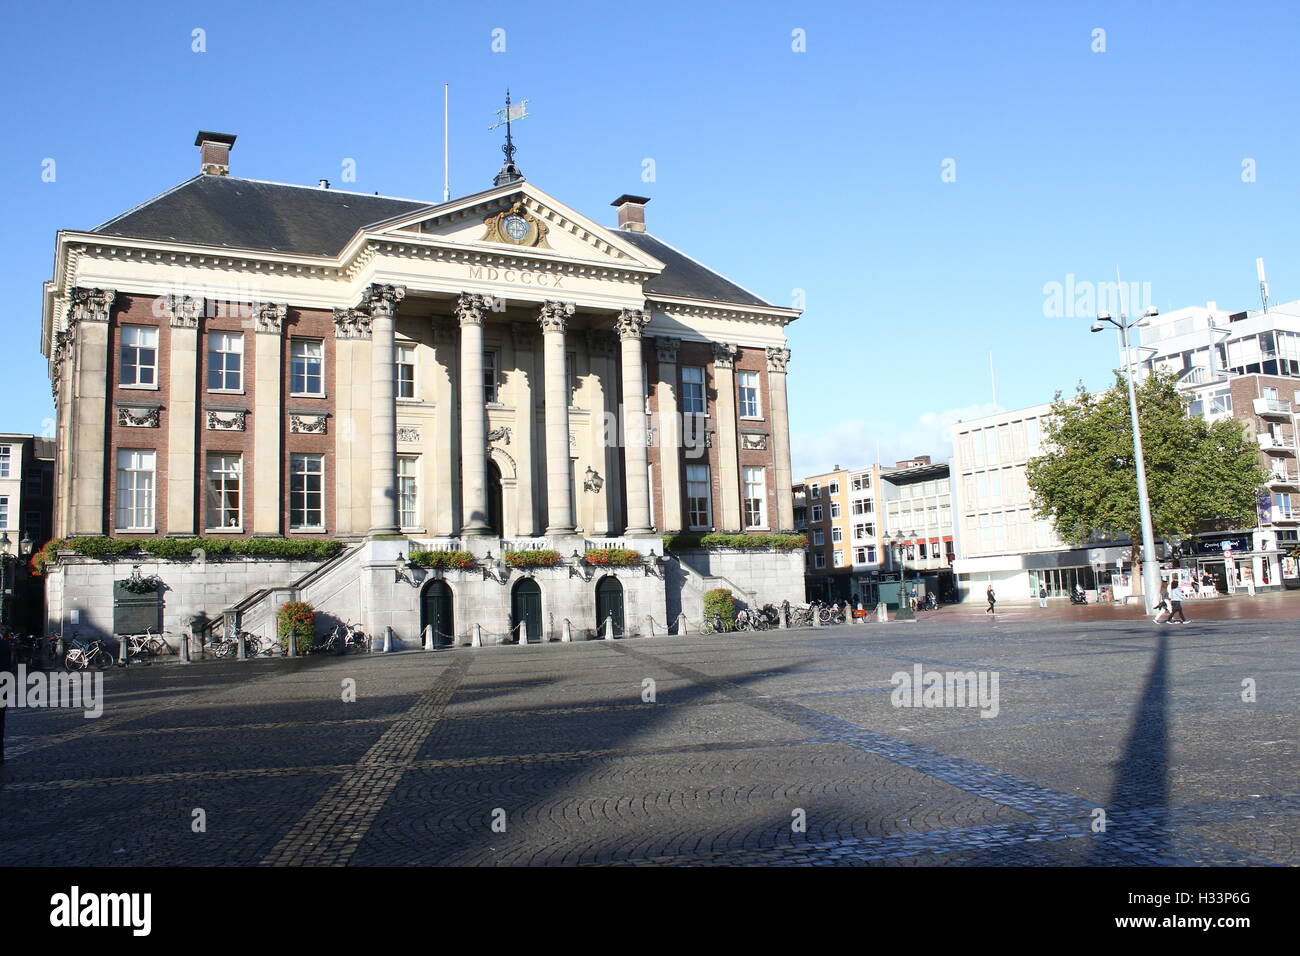 Hôtel de ville (Stadhuis) sur Grote Markt, Groningen, Pays-Bas. Sur l'ancien droit V&D department store (Vroom & Dreesmann) Banque D'Images